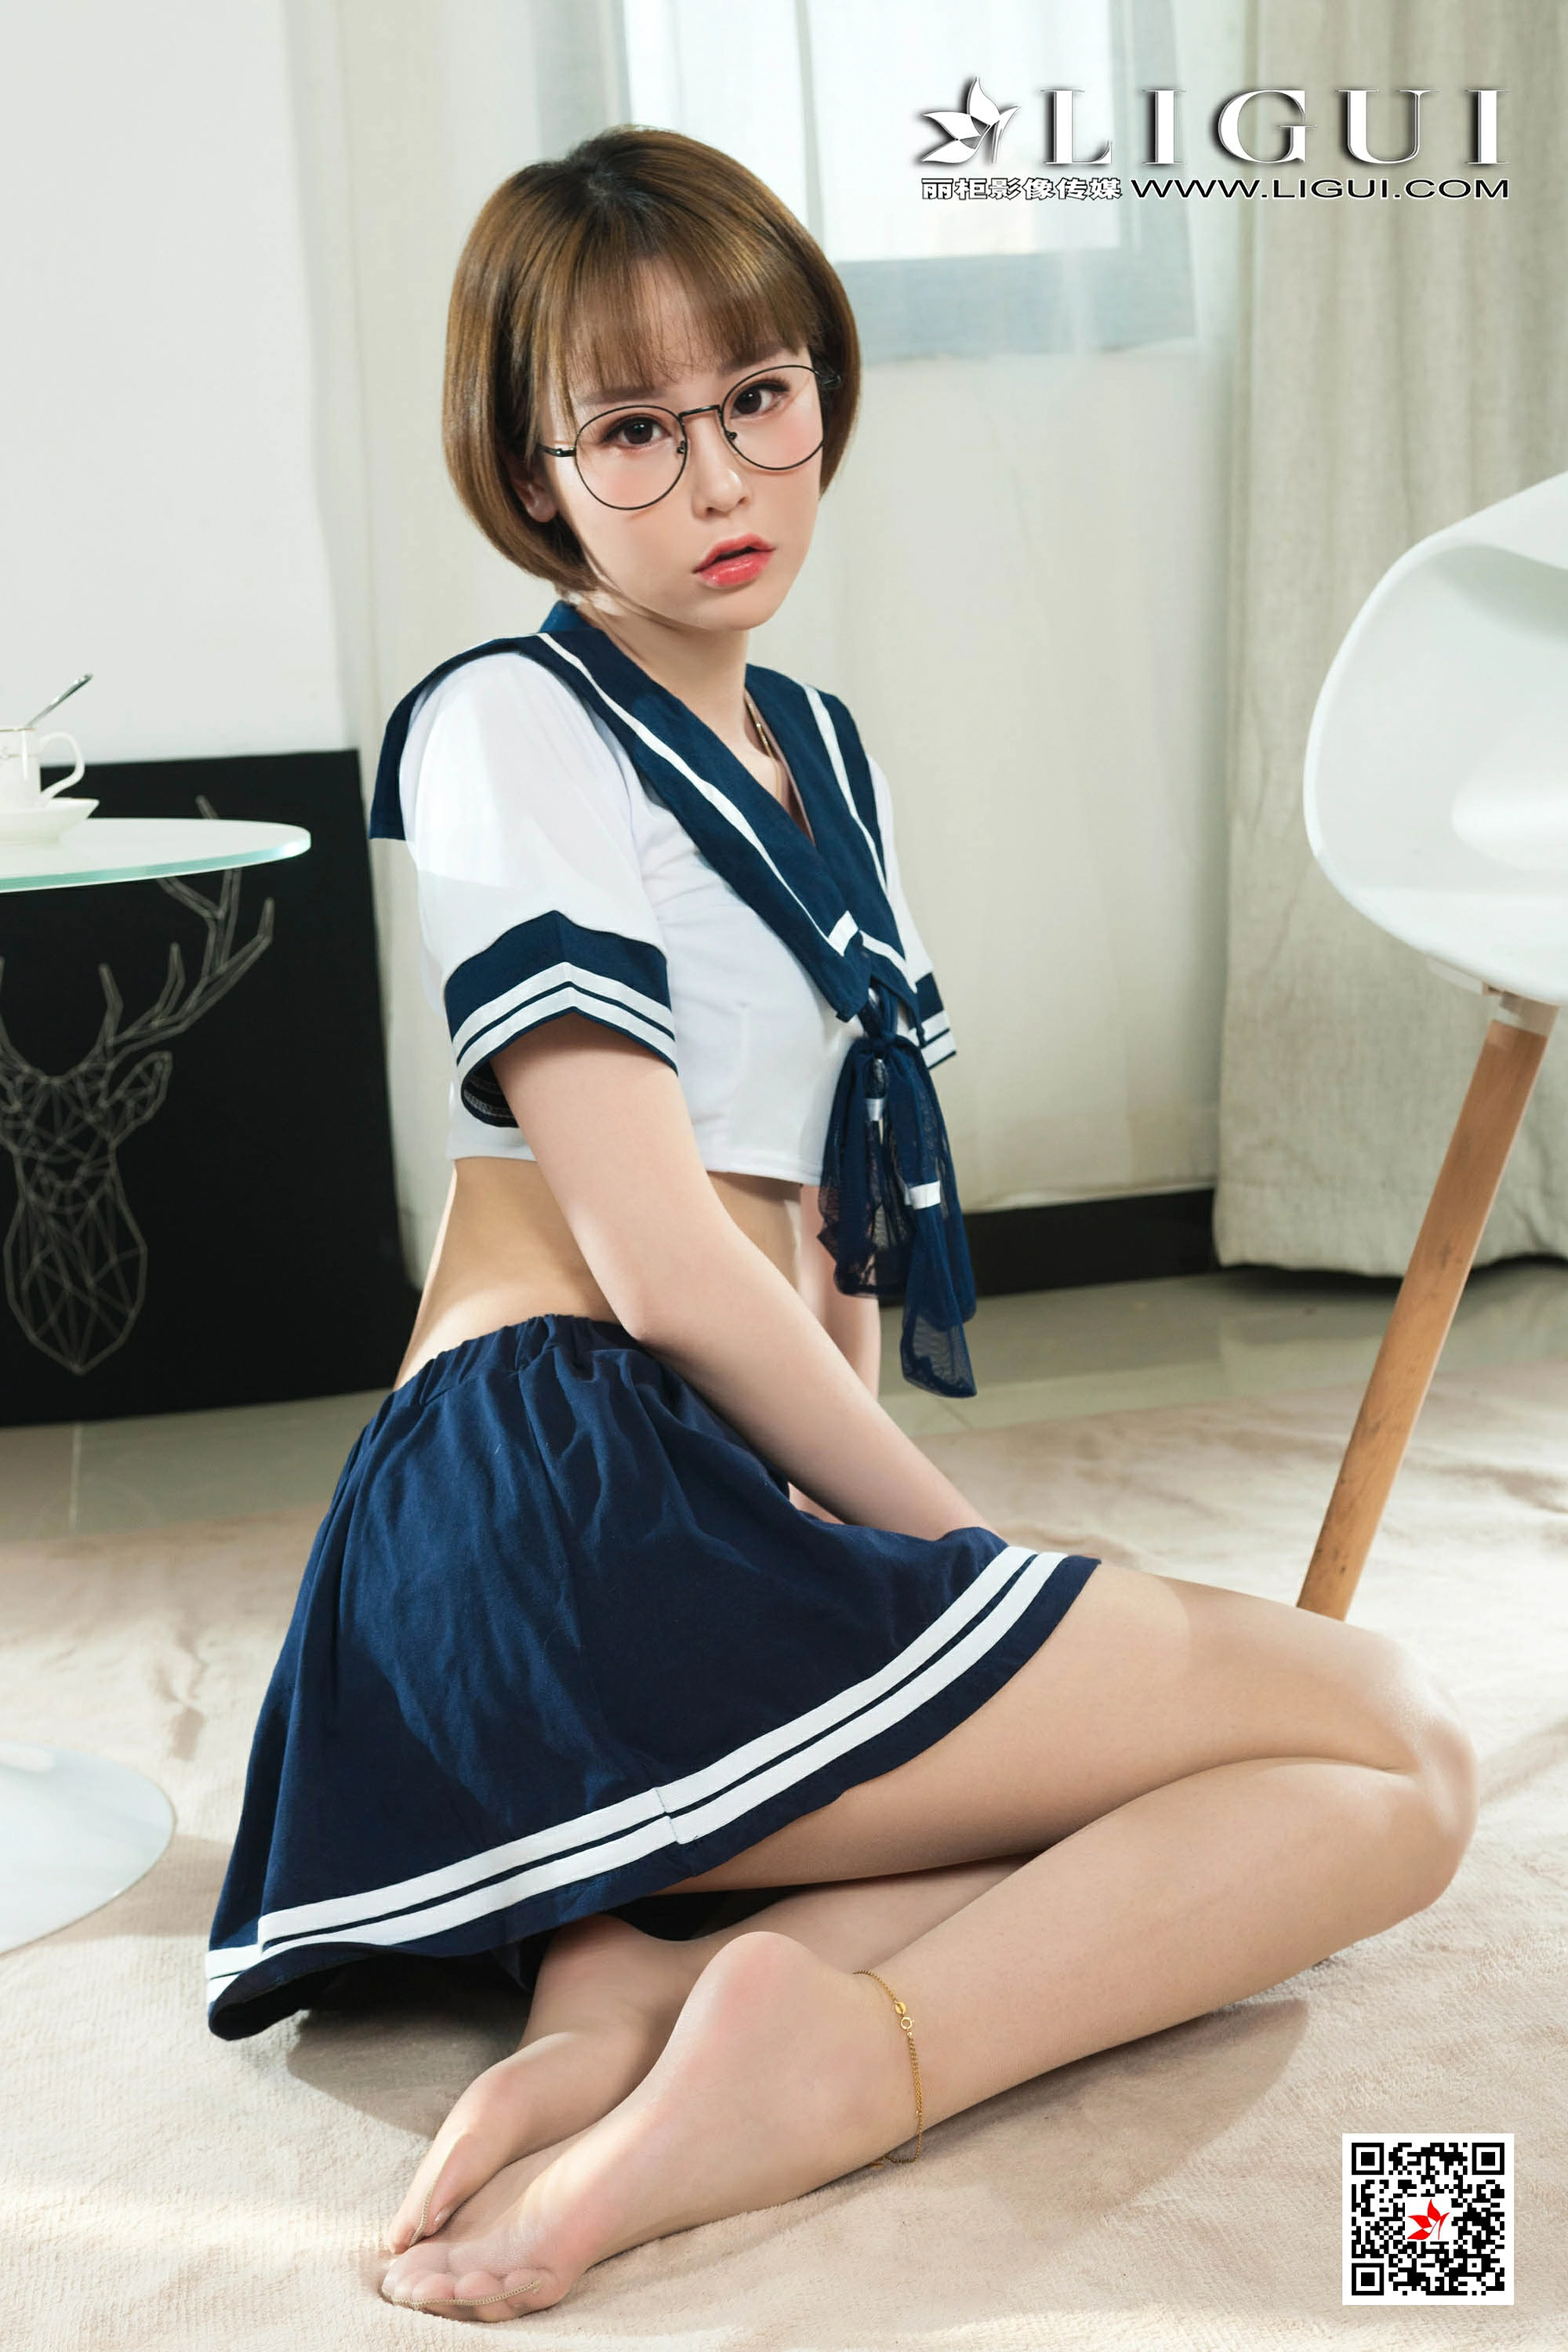 [Ligui丽柜会所]2020-04-07 Model 洋洋 情趣高中女生制服与短裙加肉色丝袜美腿性感私房写真集,